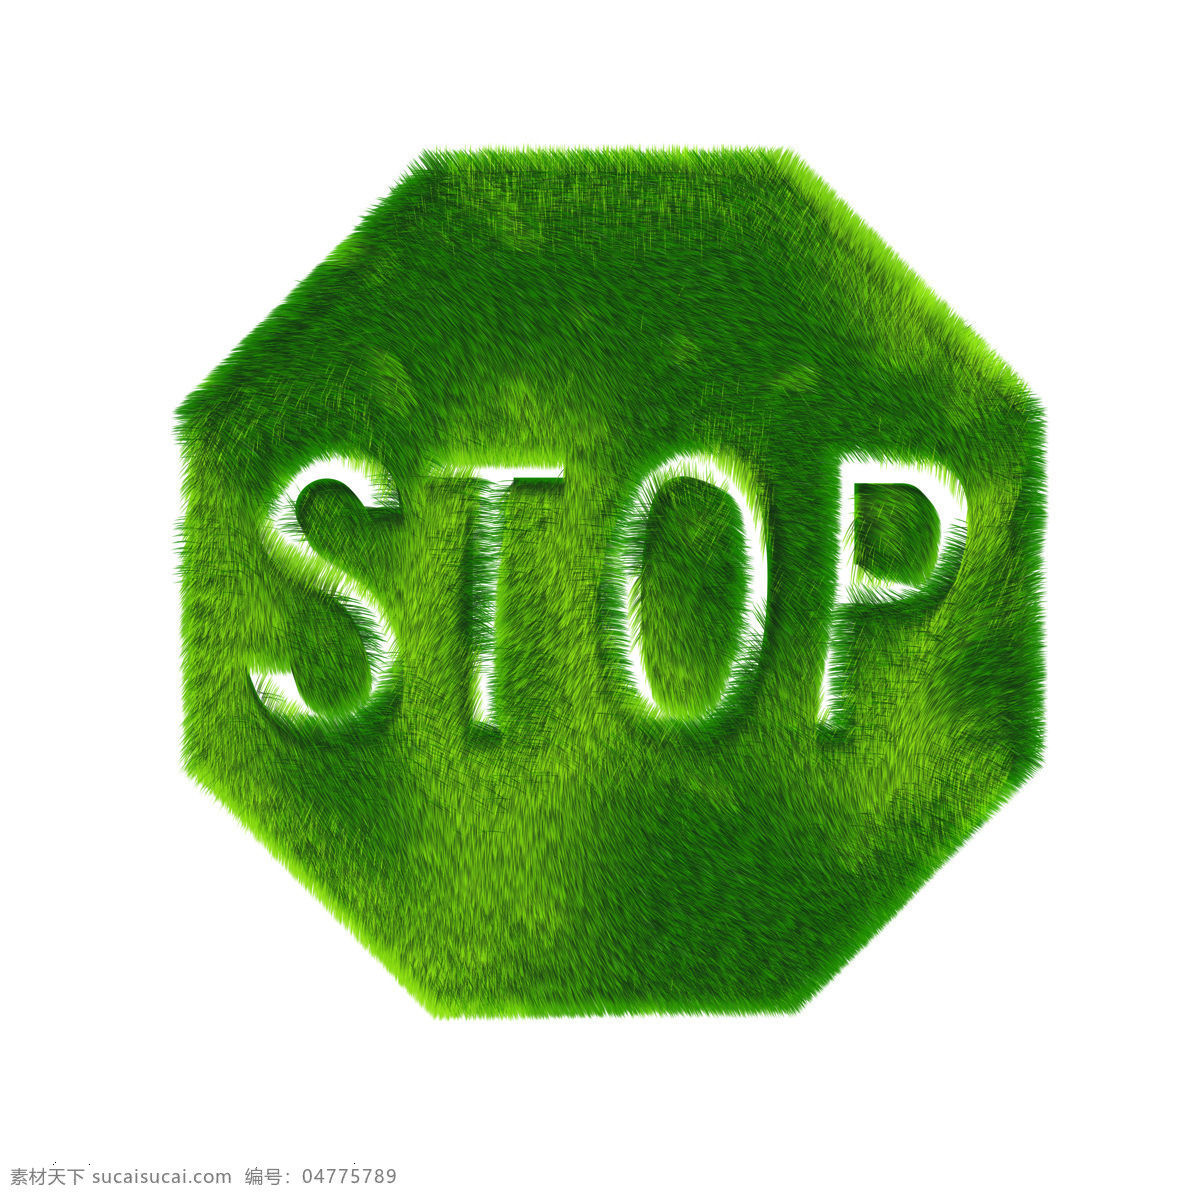 草坪 拼 成 stop 停止 禁止 不准 环保 绿色标志 设计素材 图形创意 平面创意 平面设计 黑色